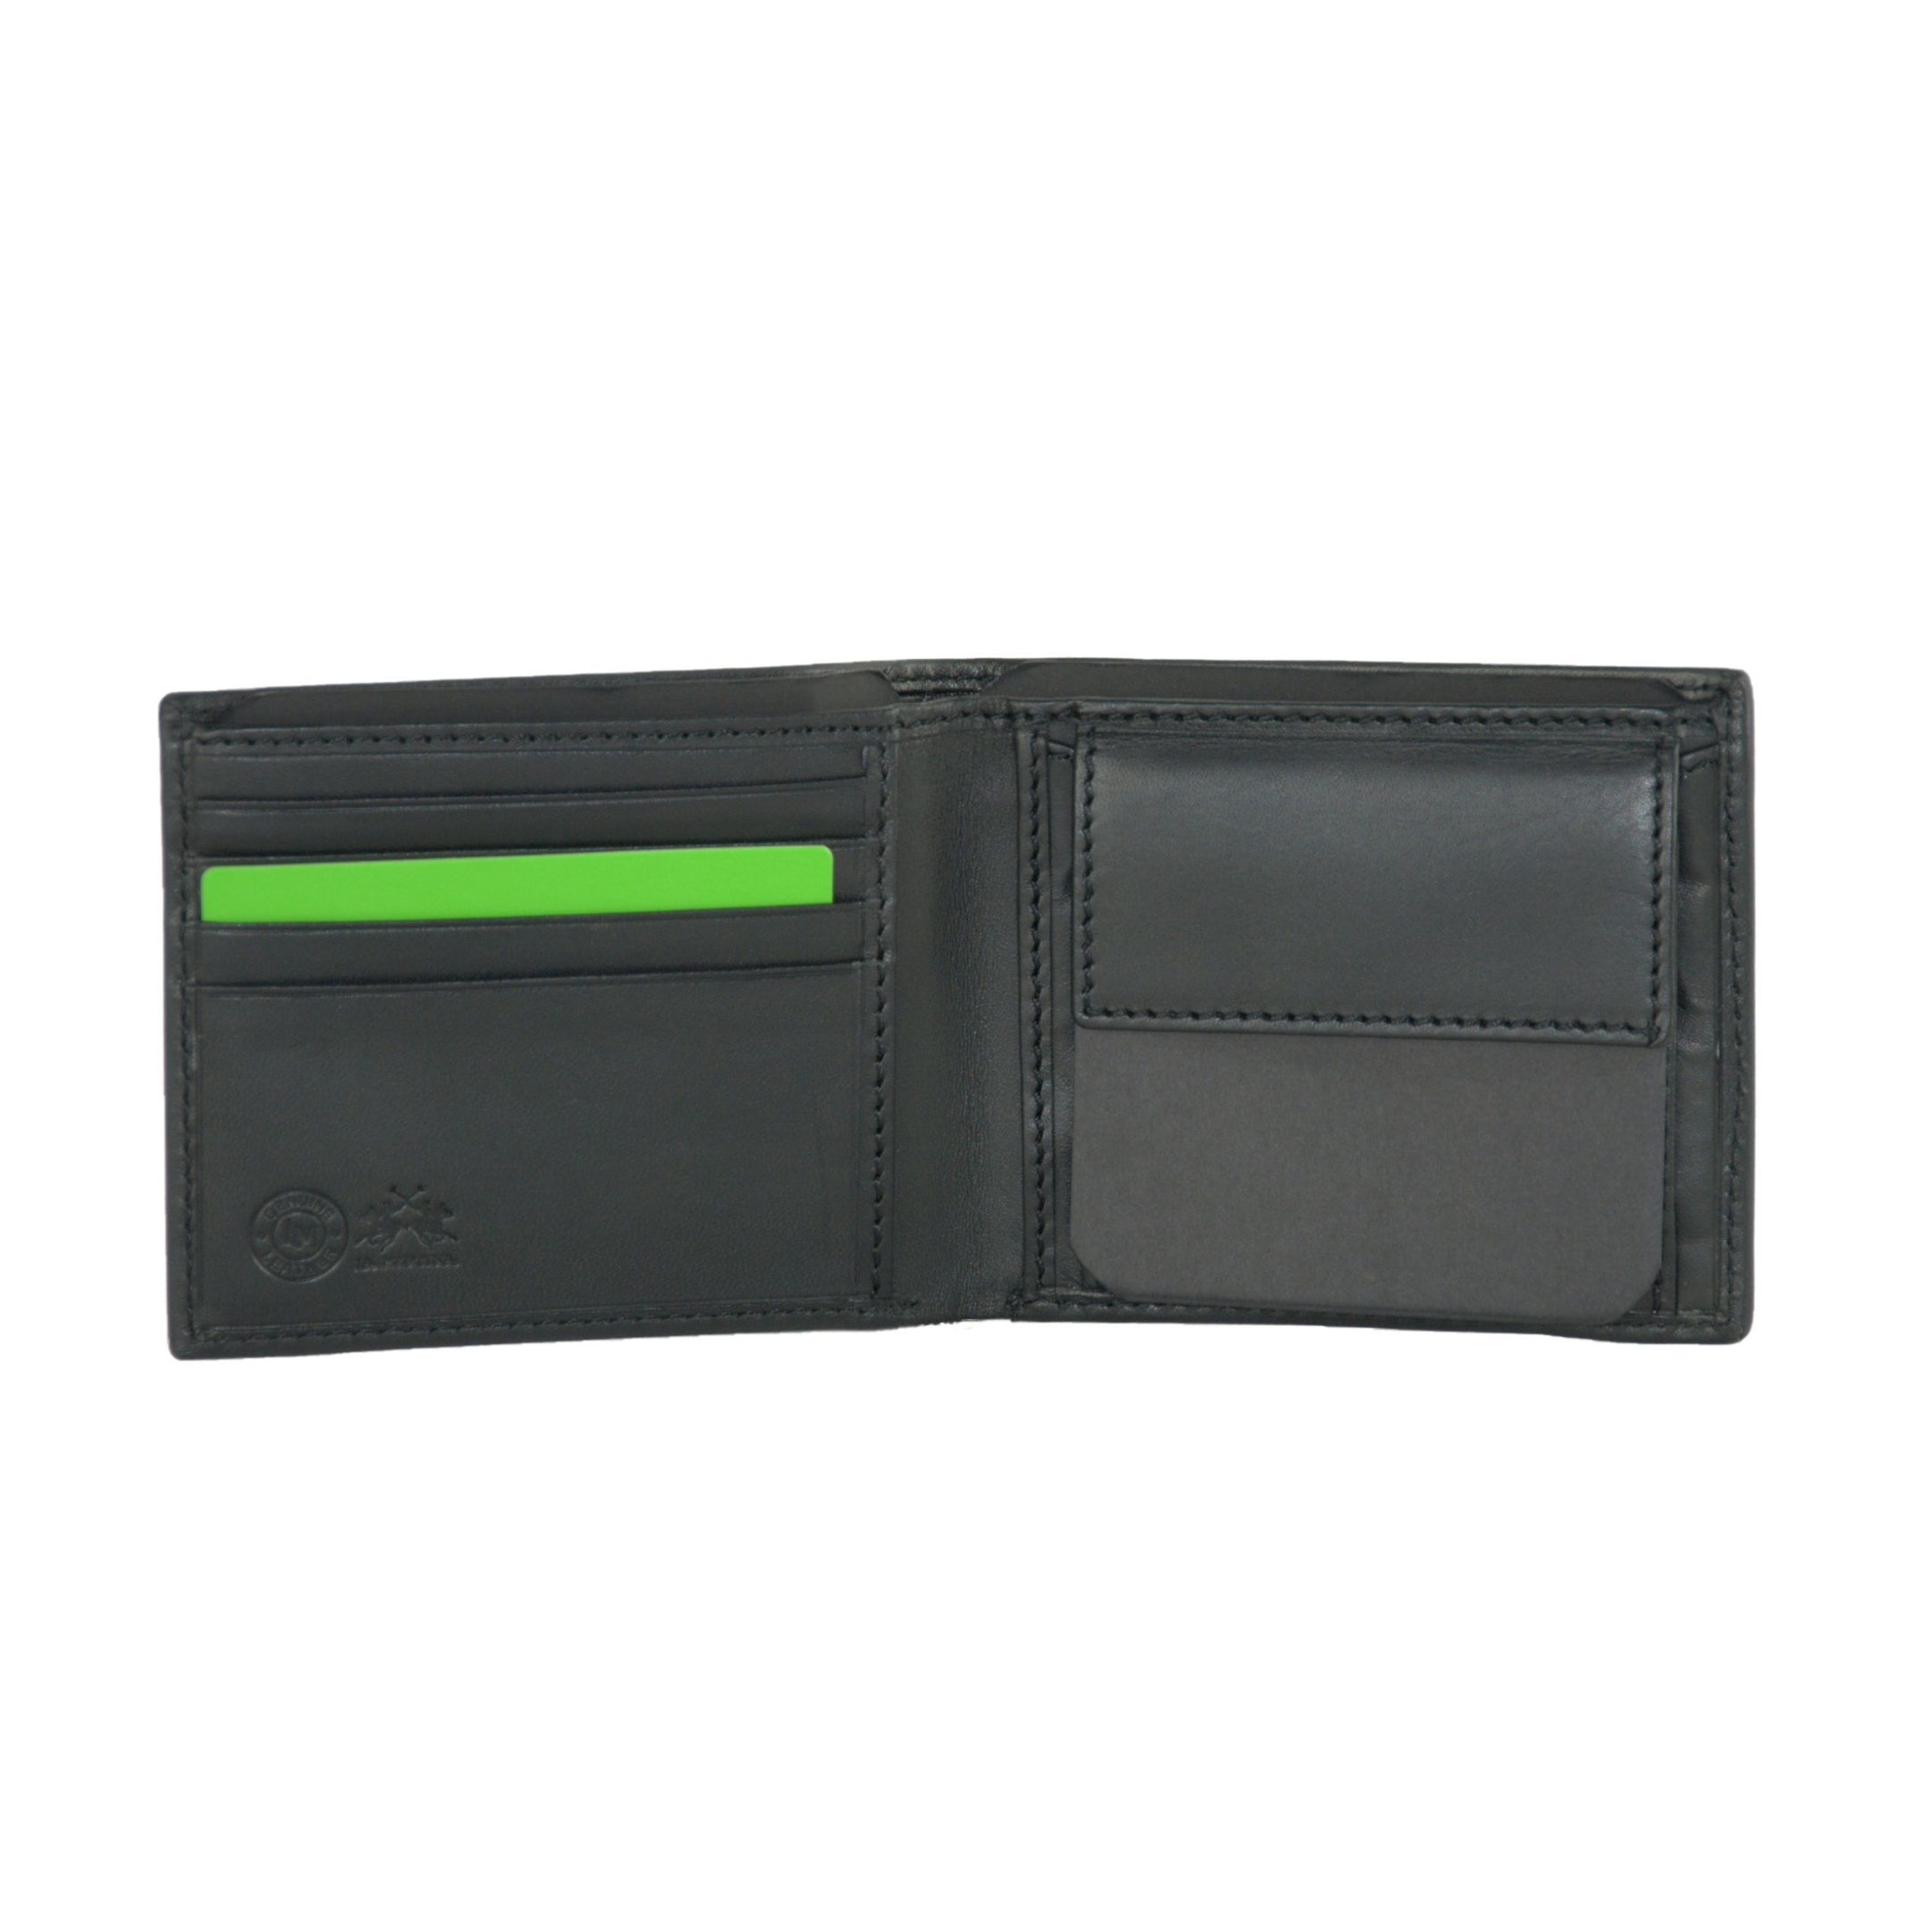 Elegant Black Leather Wallet